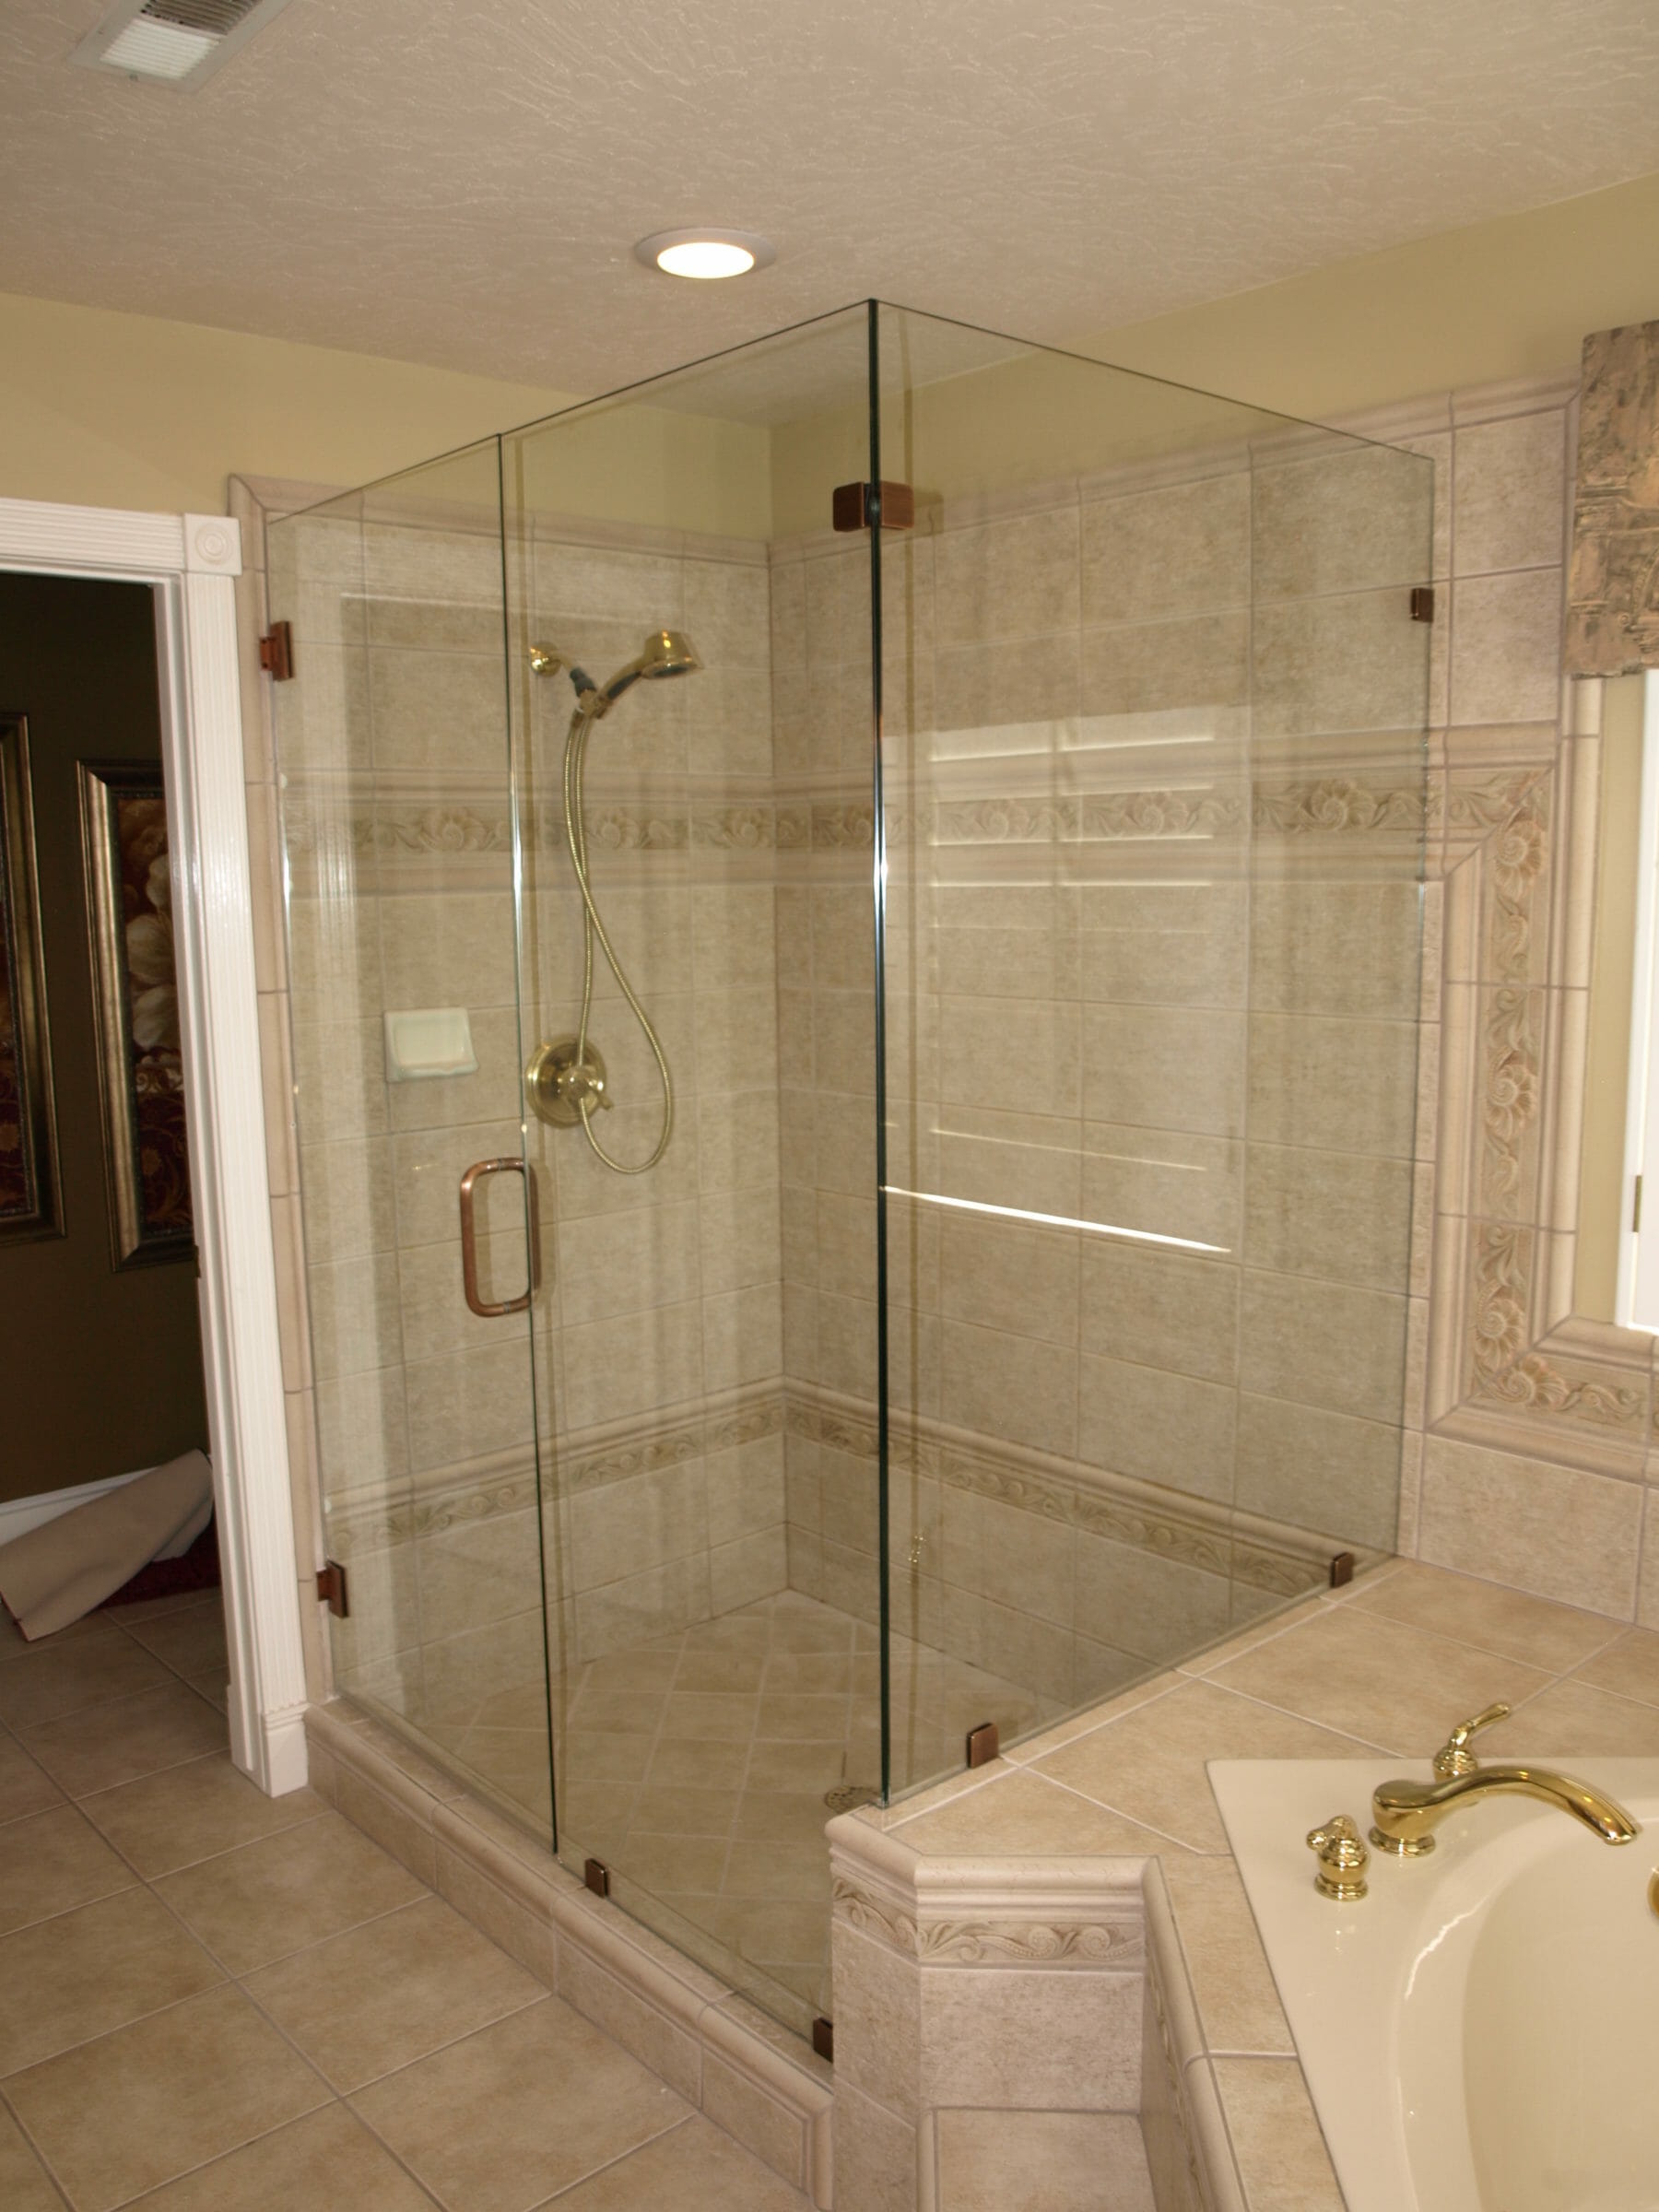 Glass Doors For Bathroom : Framed vs Frameless Glass Shower Doors Options | Ideas 4 Homes / Here 